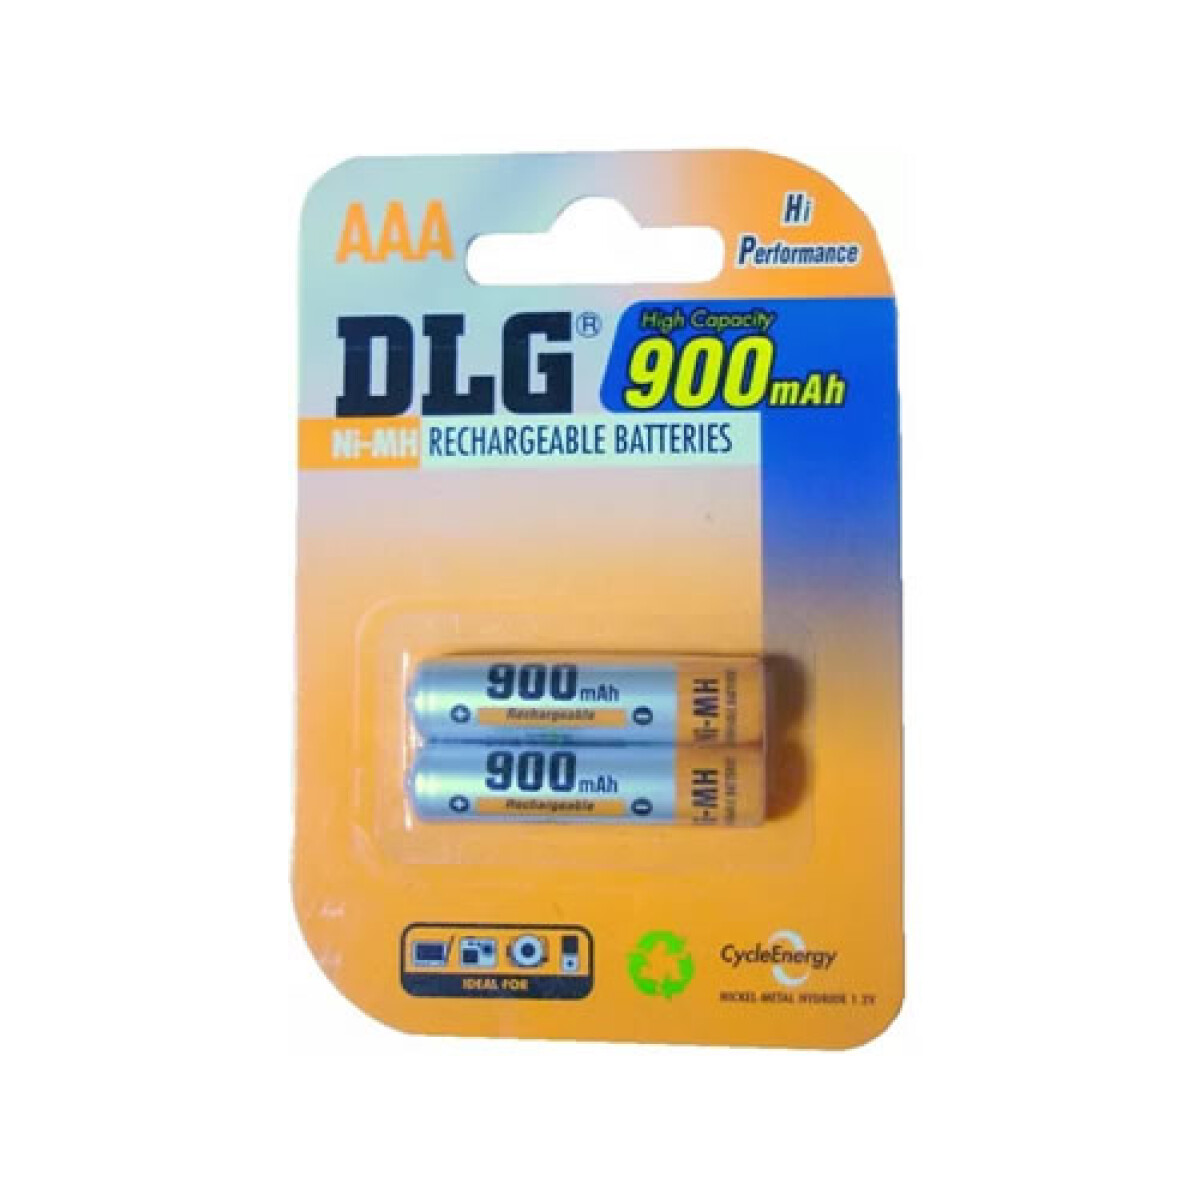 Pila AAA recargable DLG 900 mAh blister x 2 